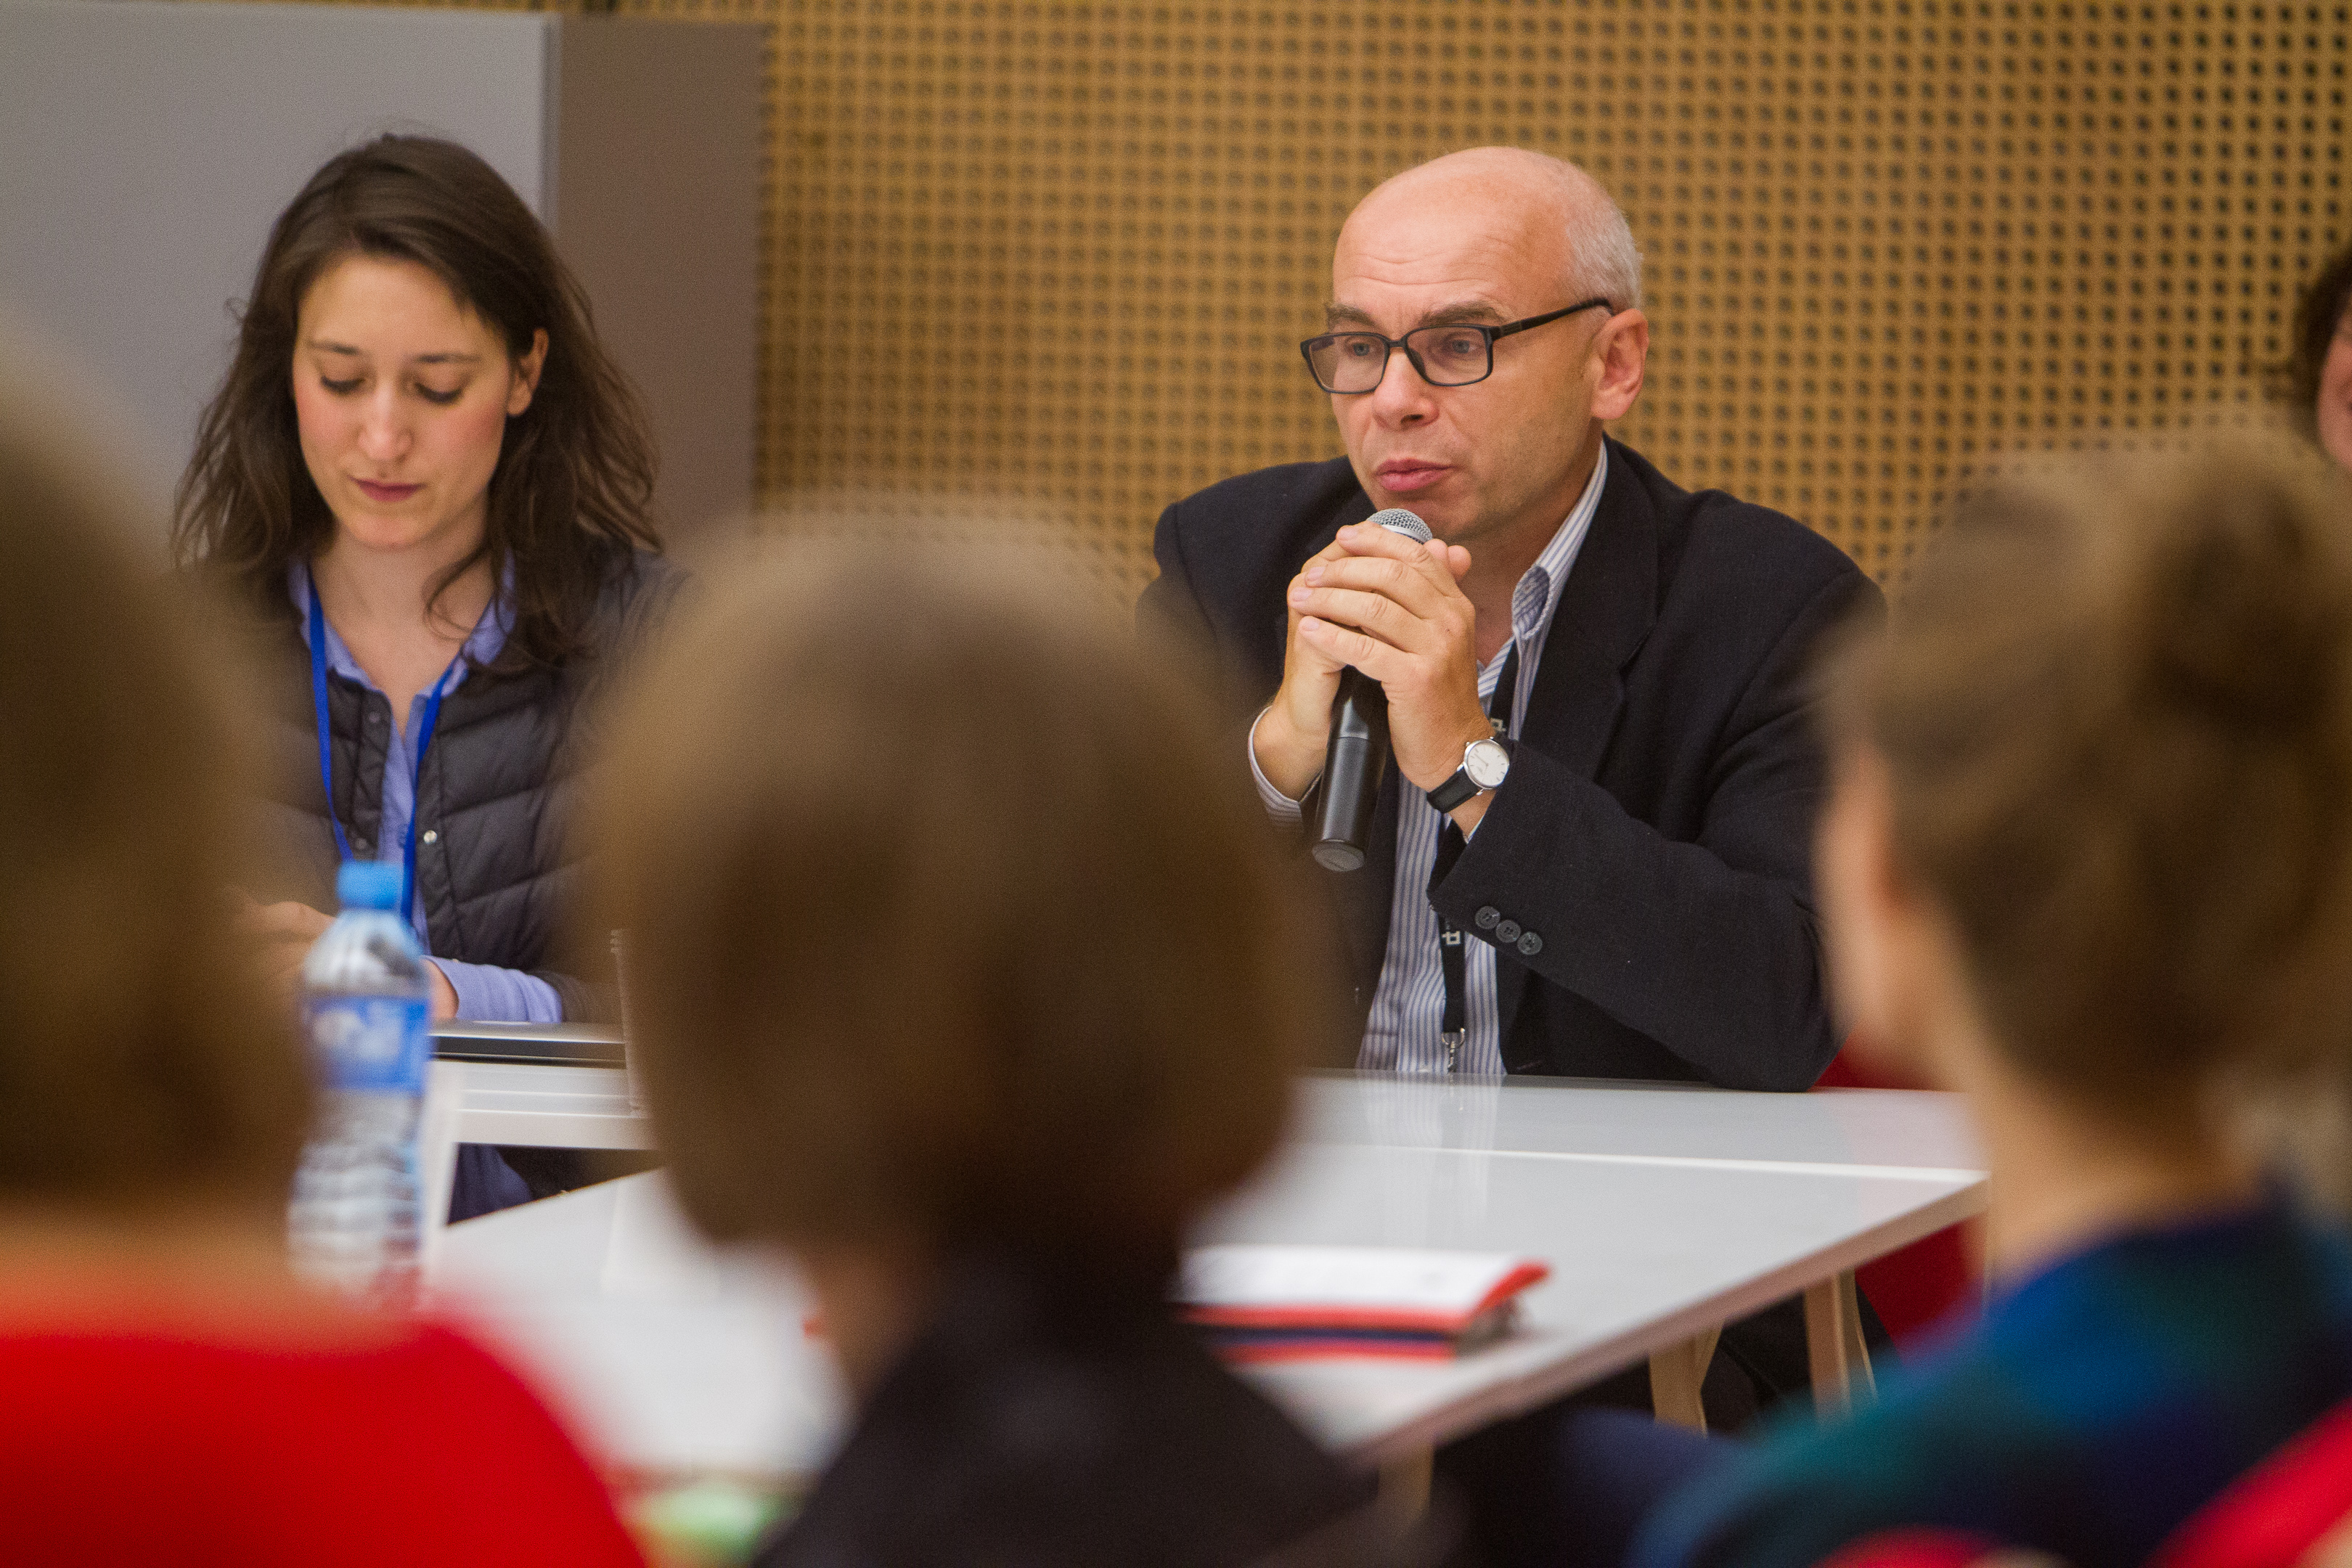 Przy stole konferencyjnym siedzą kobieta i mężczyzna (prof. Dariusz Stola). Prof. Stola trzyma mikrofon, mówi